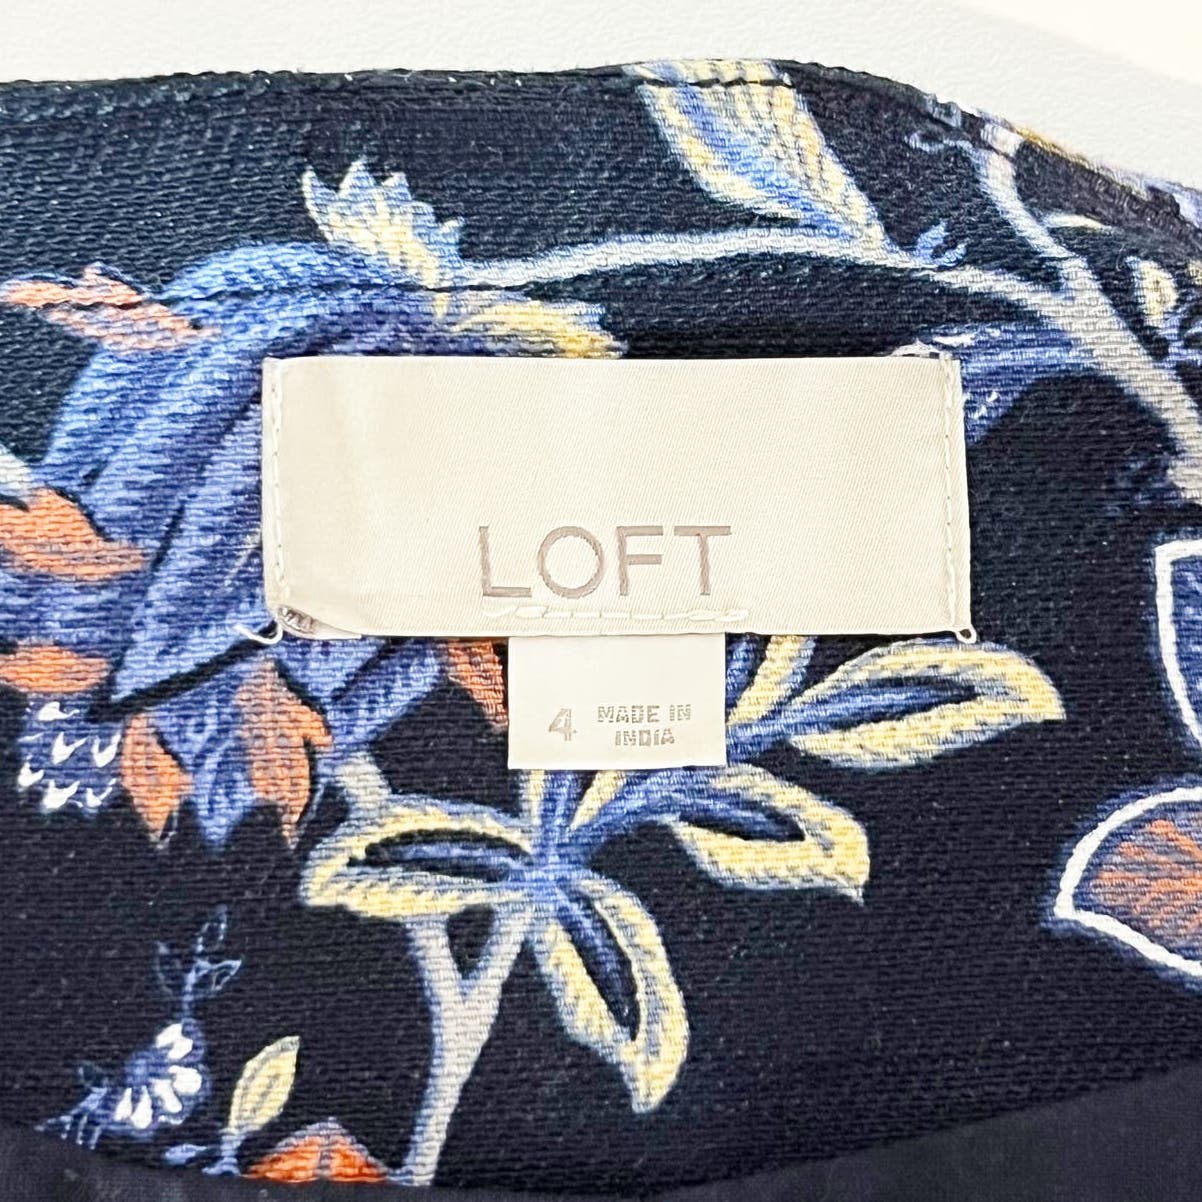 LOFT Cropped Floral Jaquard Open Blazer Jacket Navy Blue 4